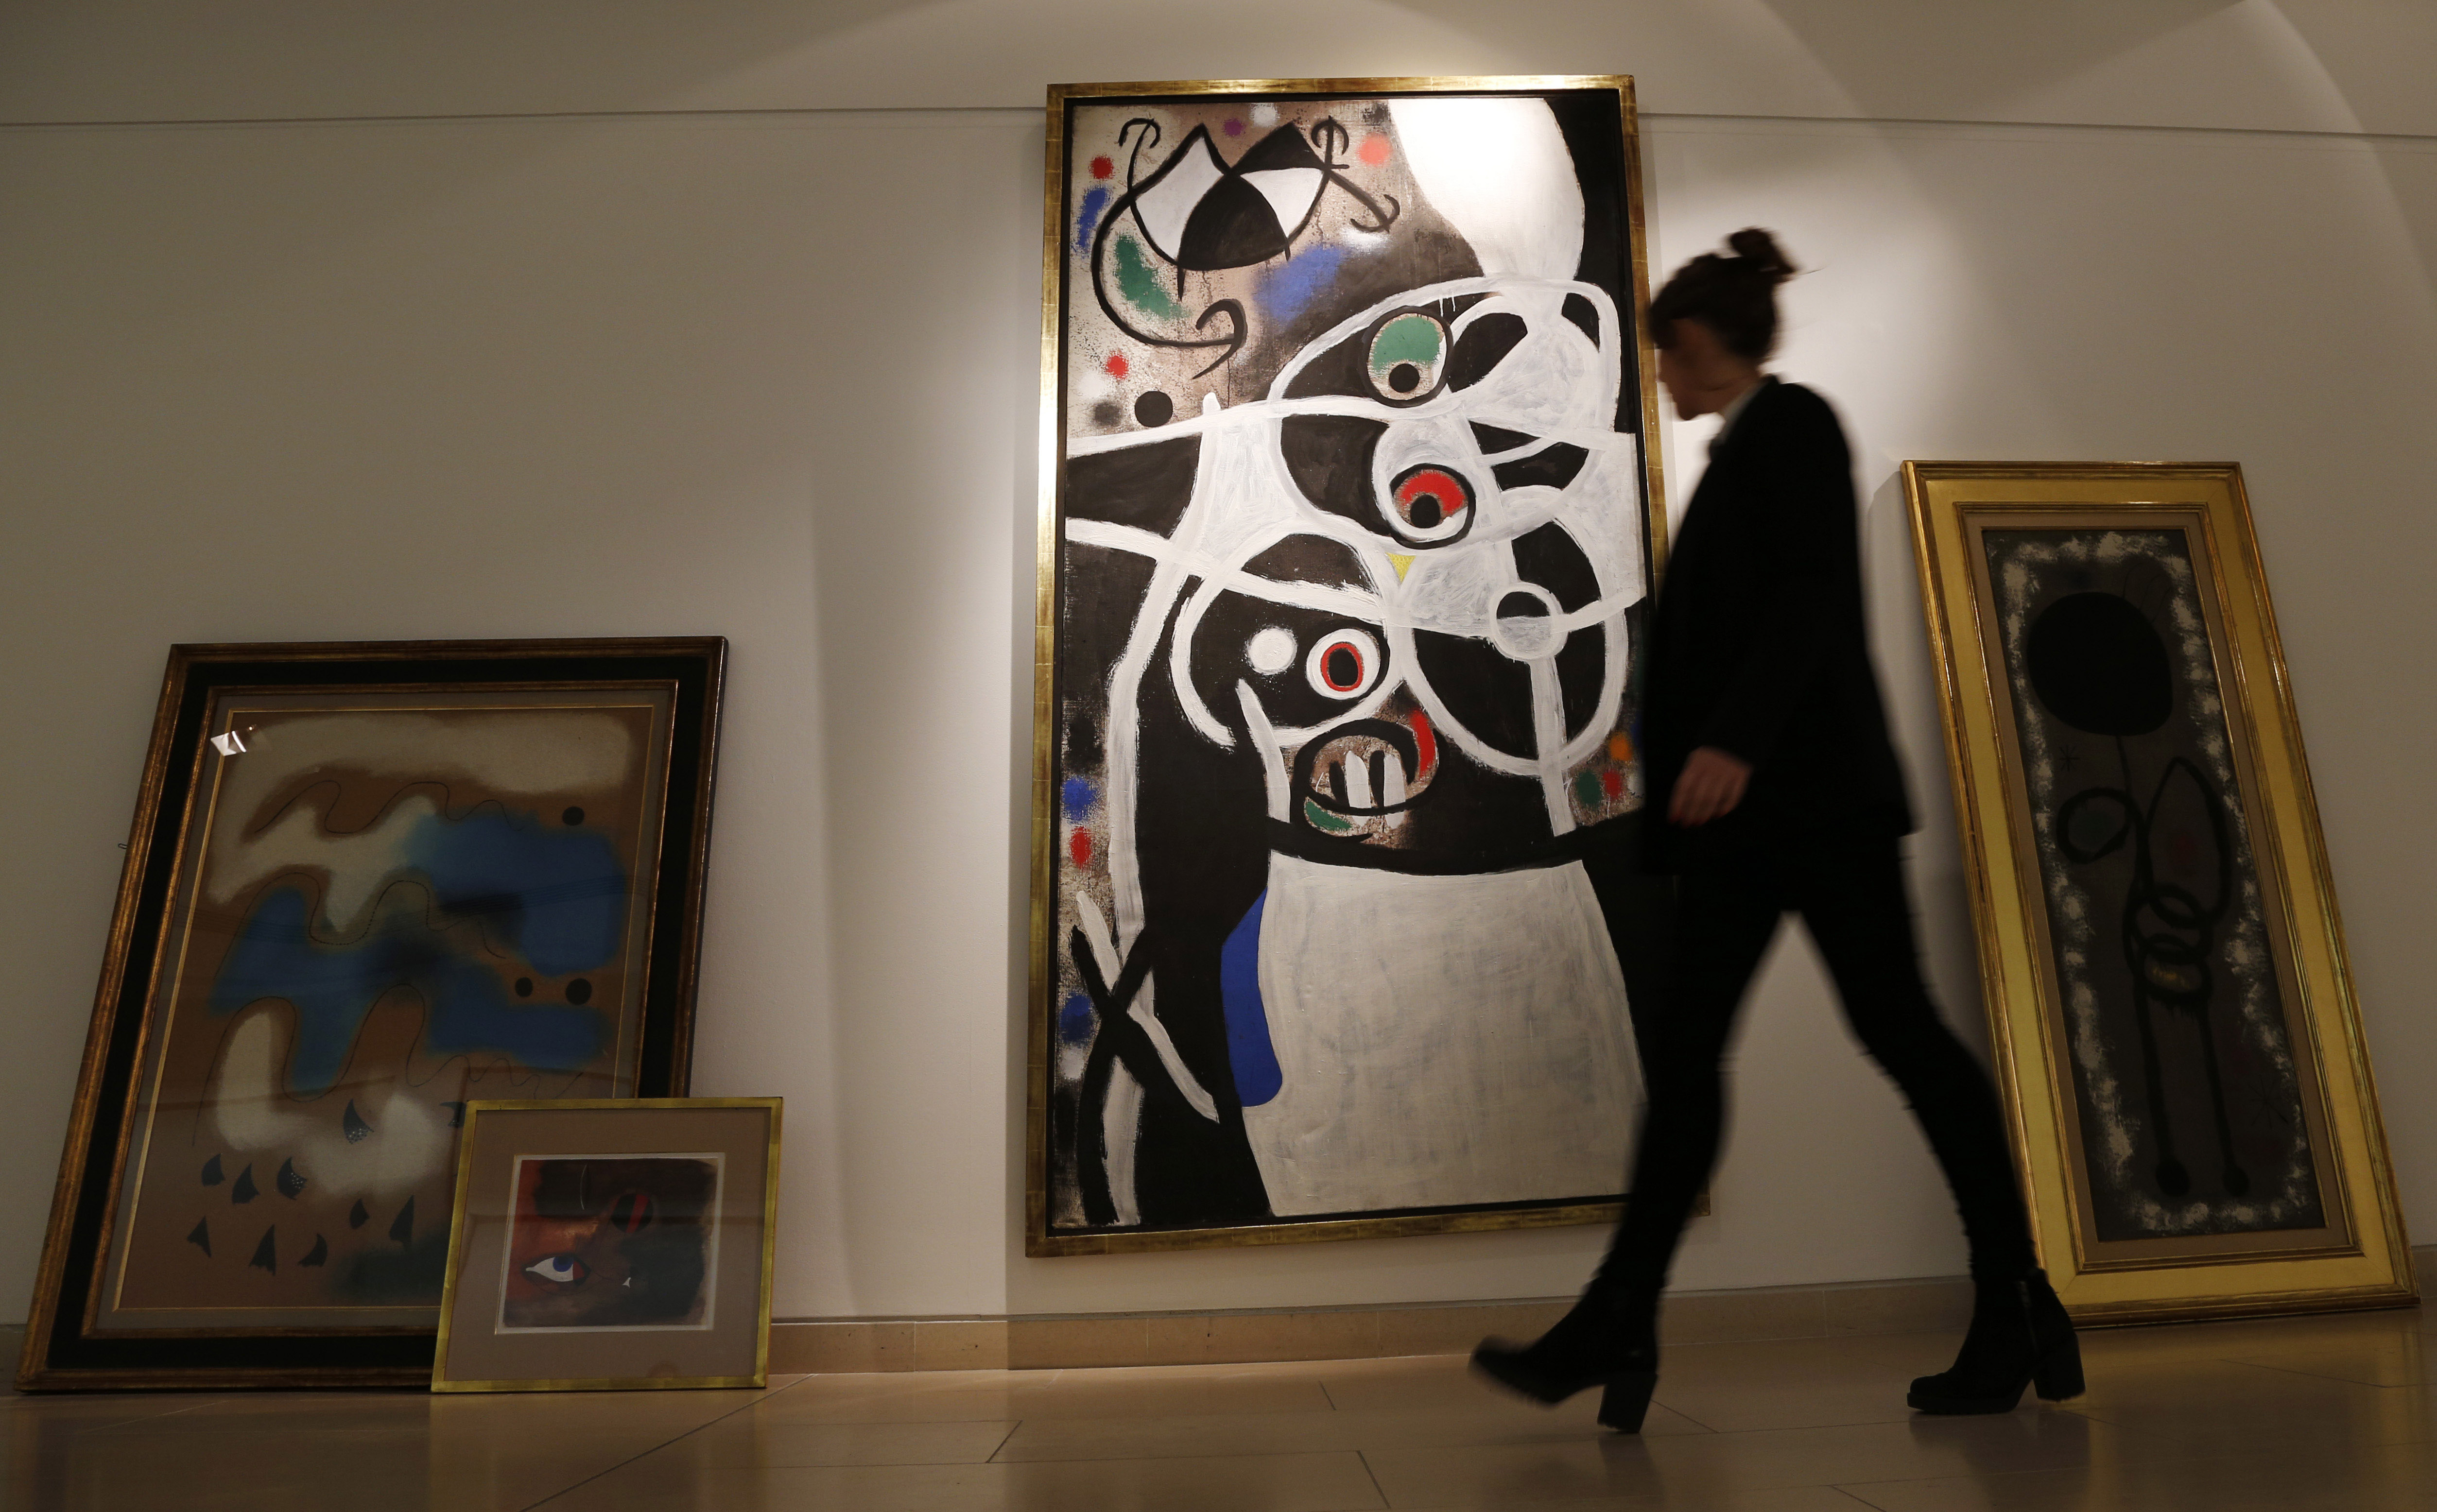 Εκατομμυριούχος θέλει να αγοράσει 85 έργα του ζωγράφου Χουάν Μιρό